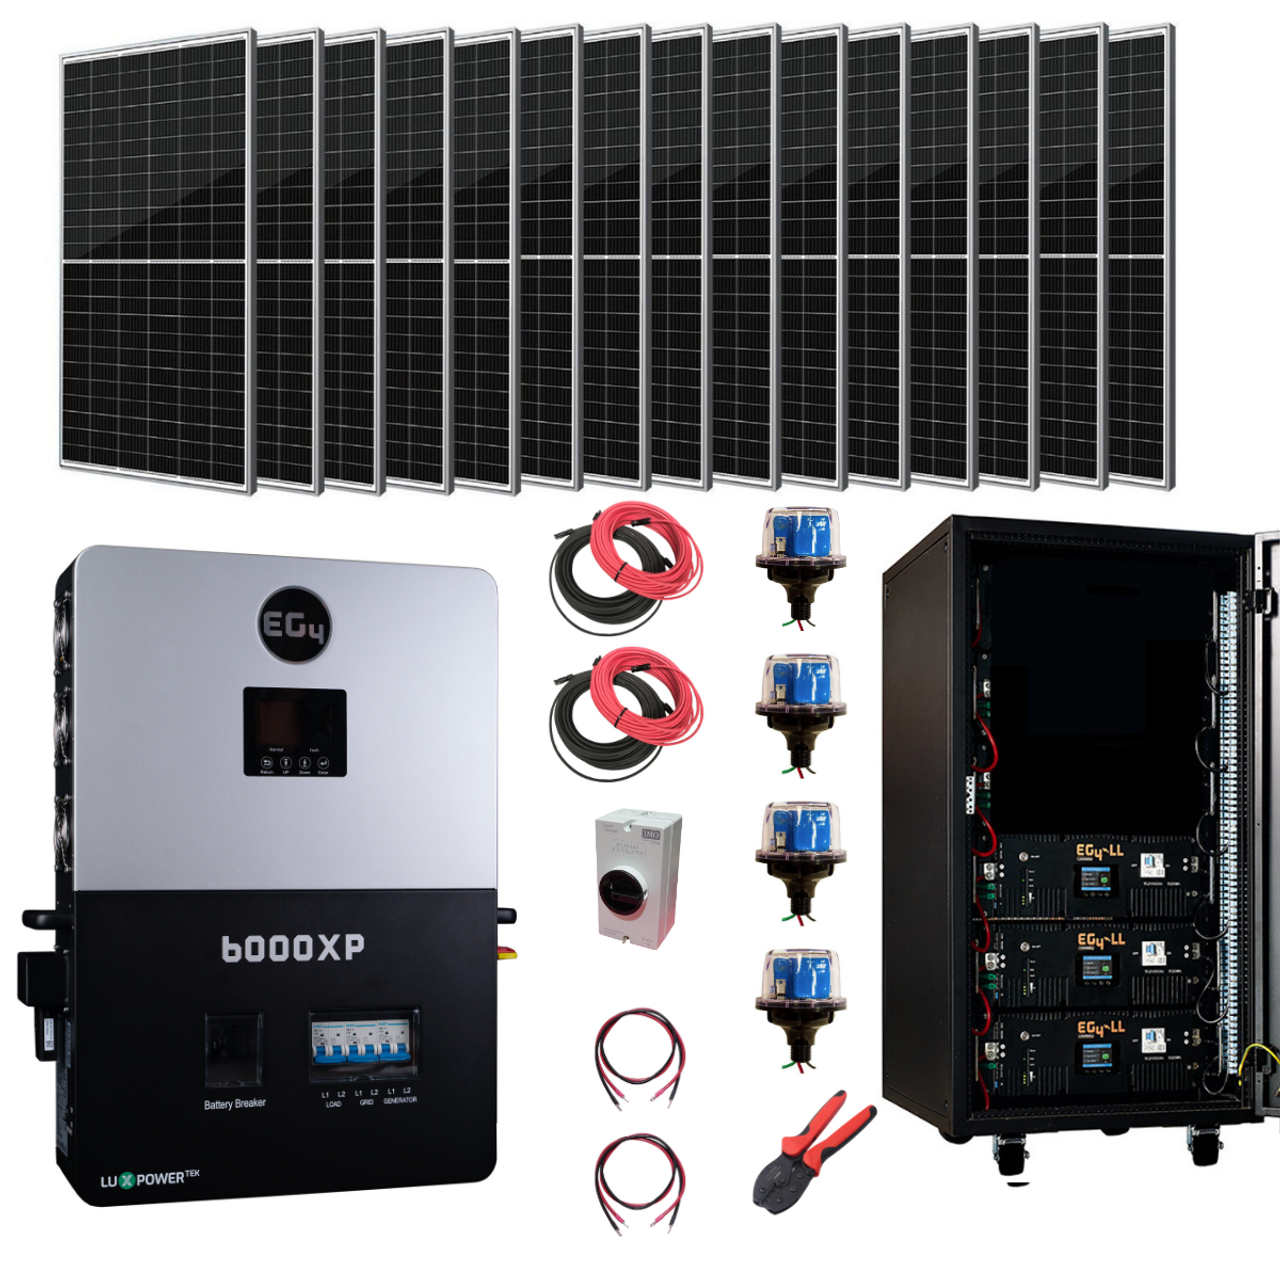 Complete Off-Grid Solar Kit - 6600W 48V